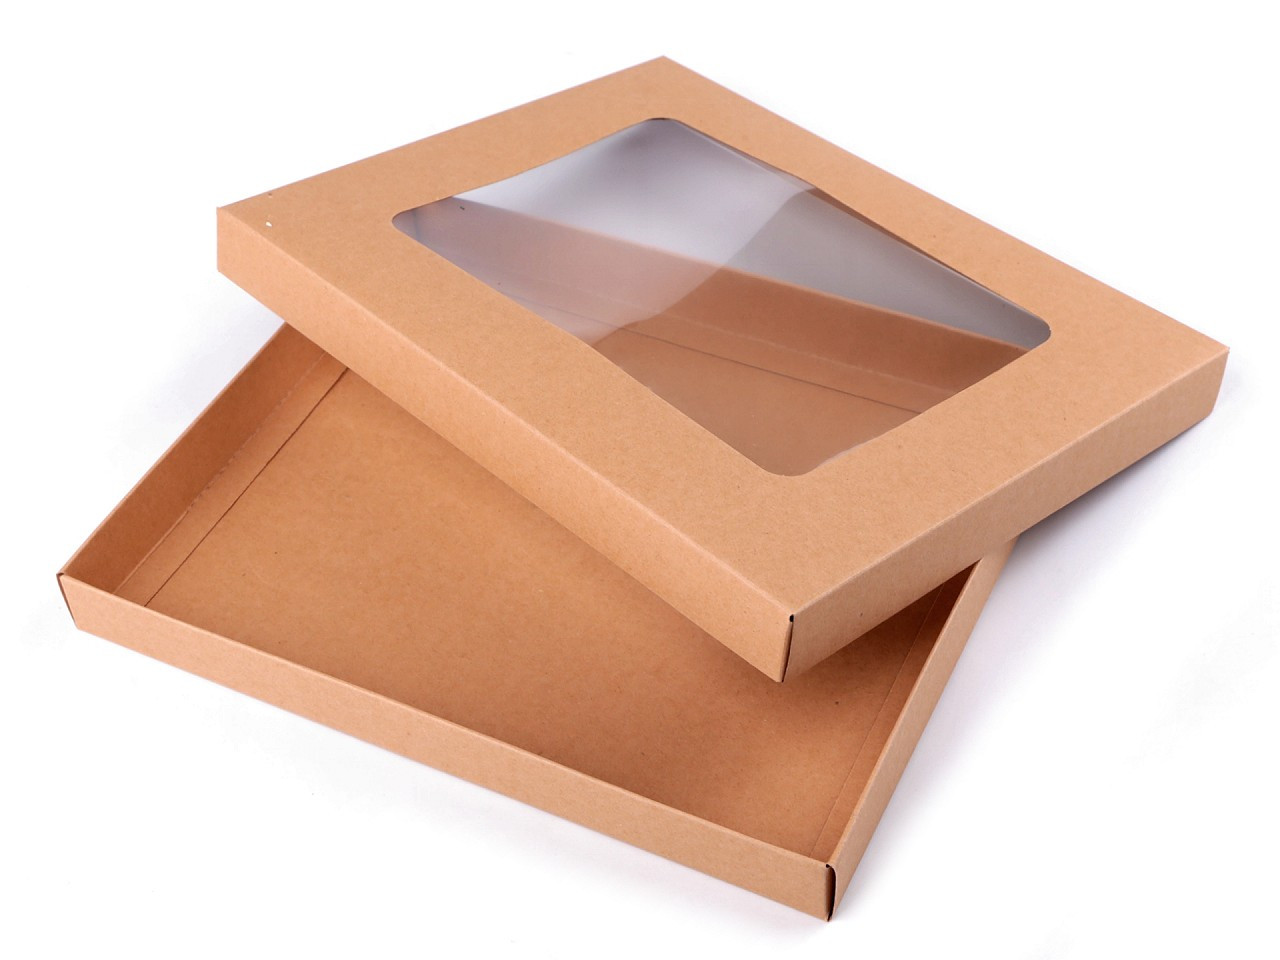 Papírová krabice s průhledem, barva hnědá přírodní